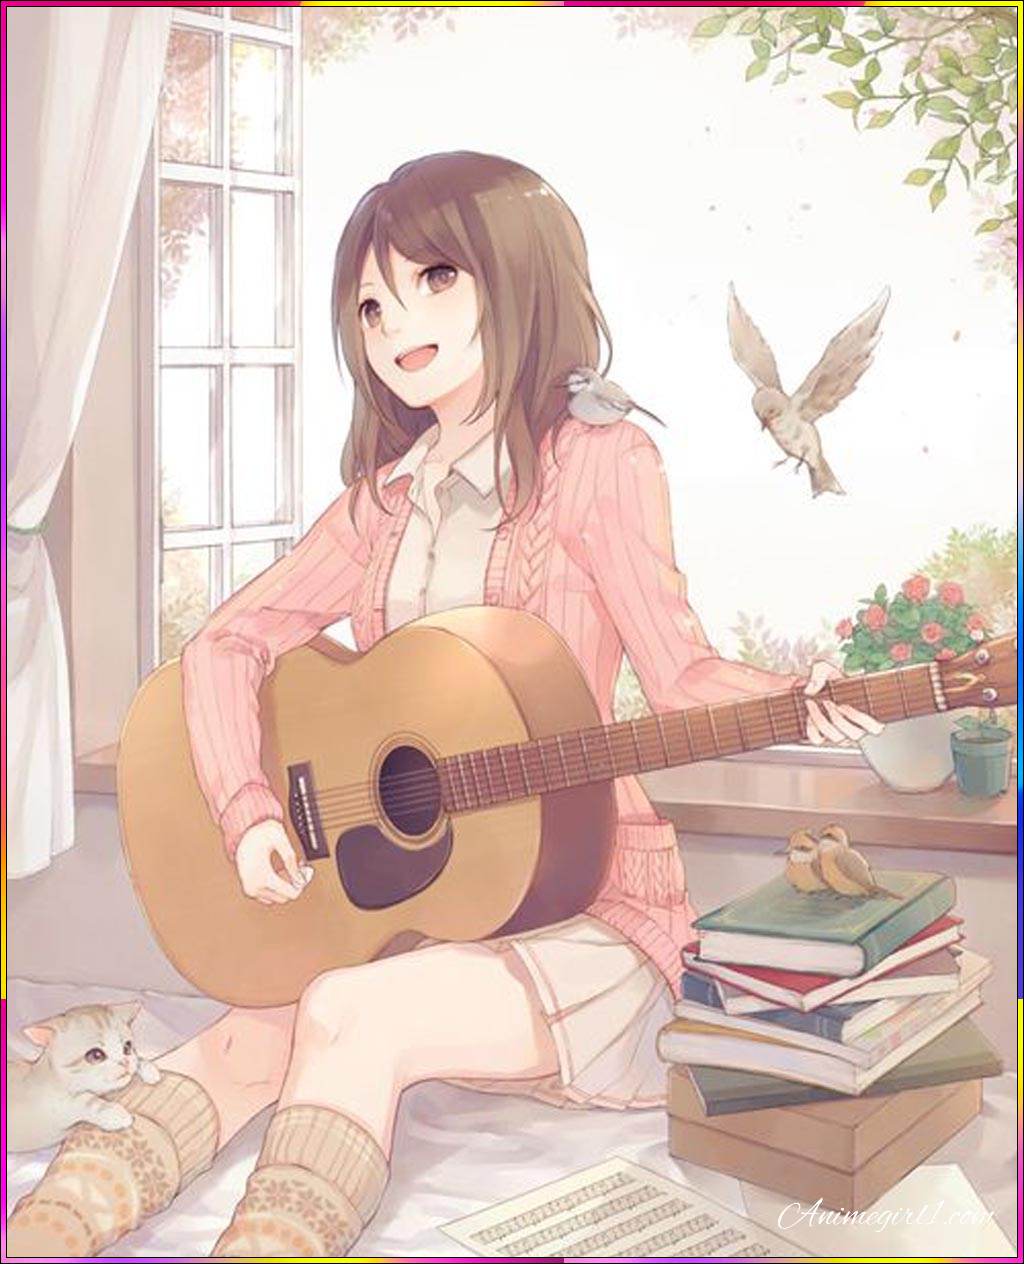 anime girl guitar pic